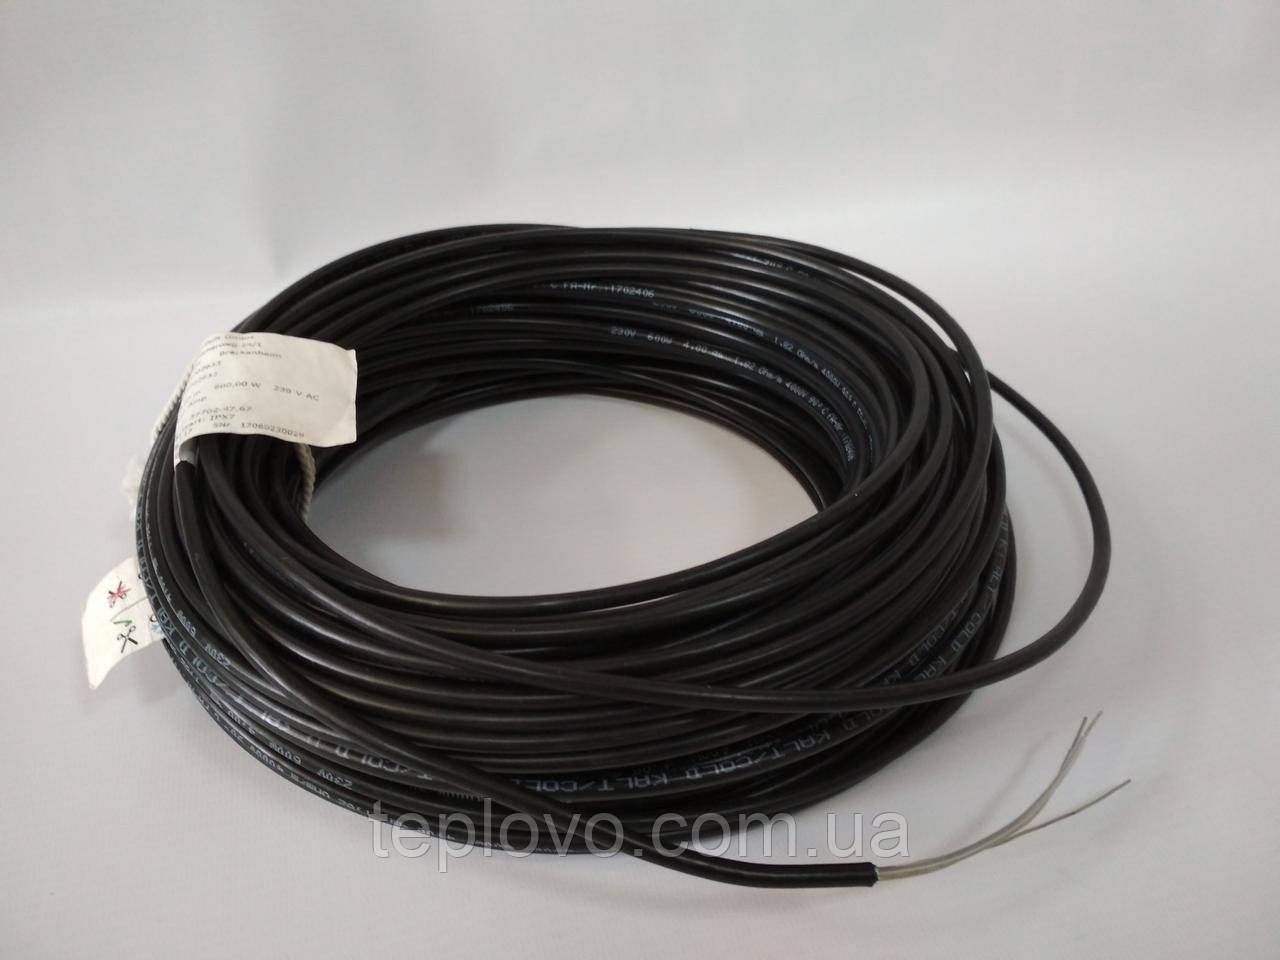 Двожильний нагрівальний кабель Hemstedt BR-IM 17, 700 Вт (3.0 - 5.1 м2), тепла підлога